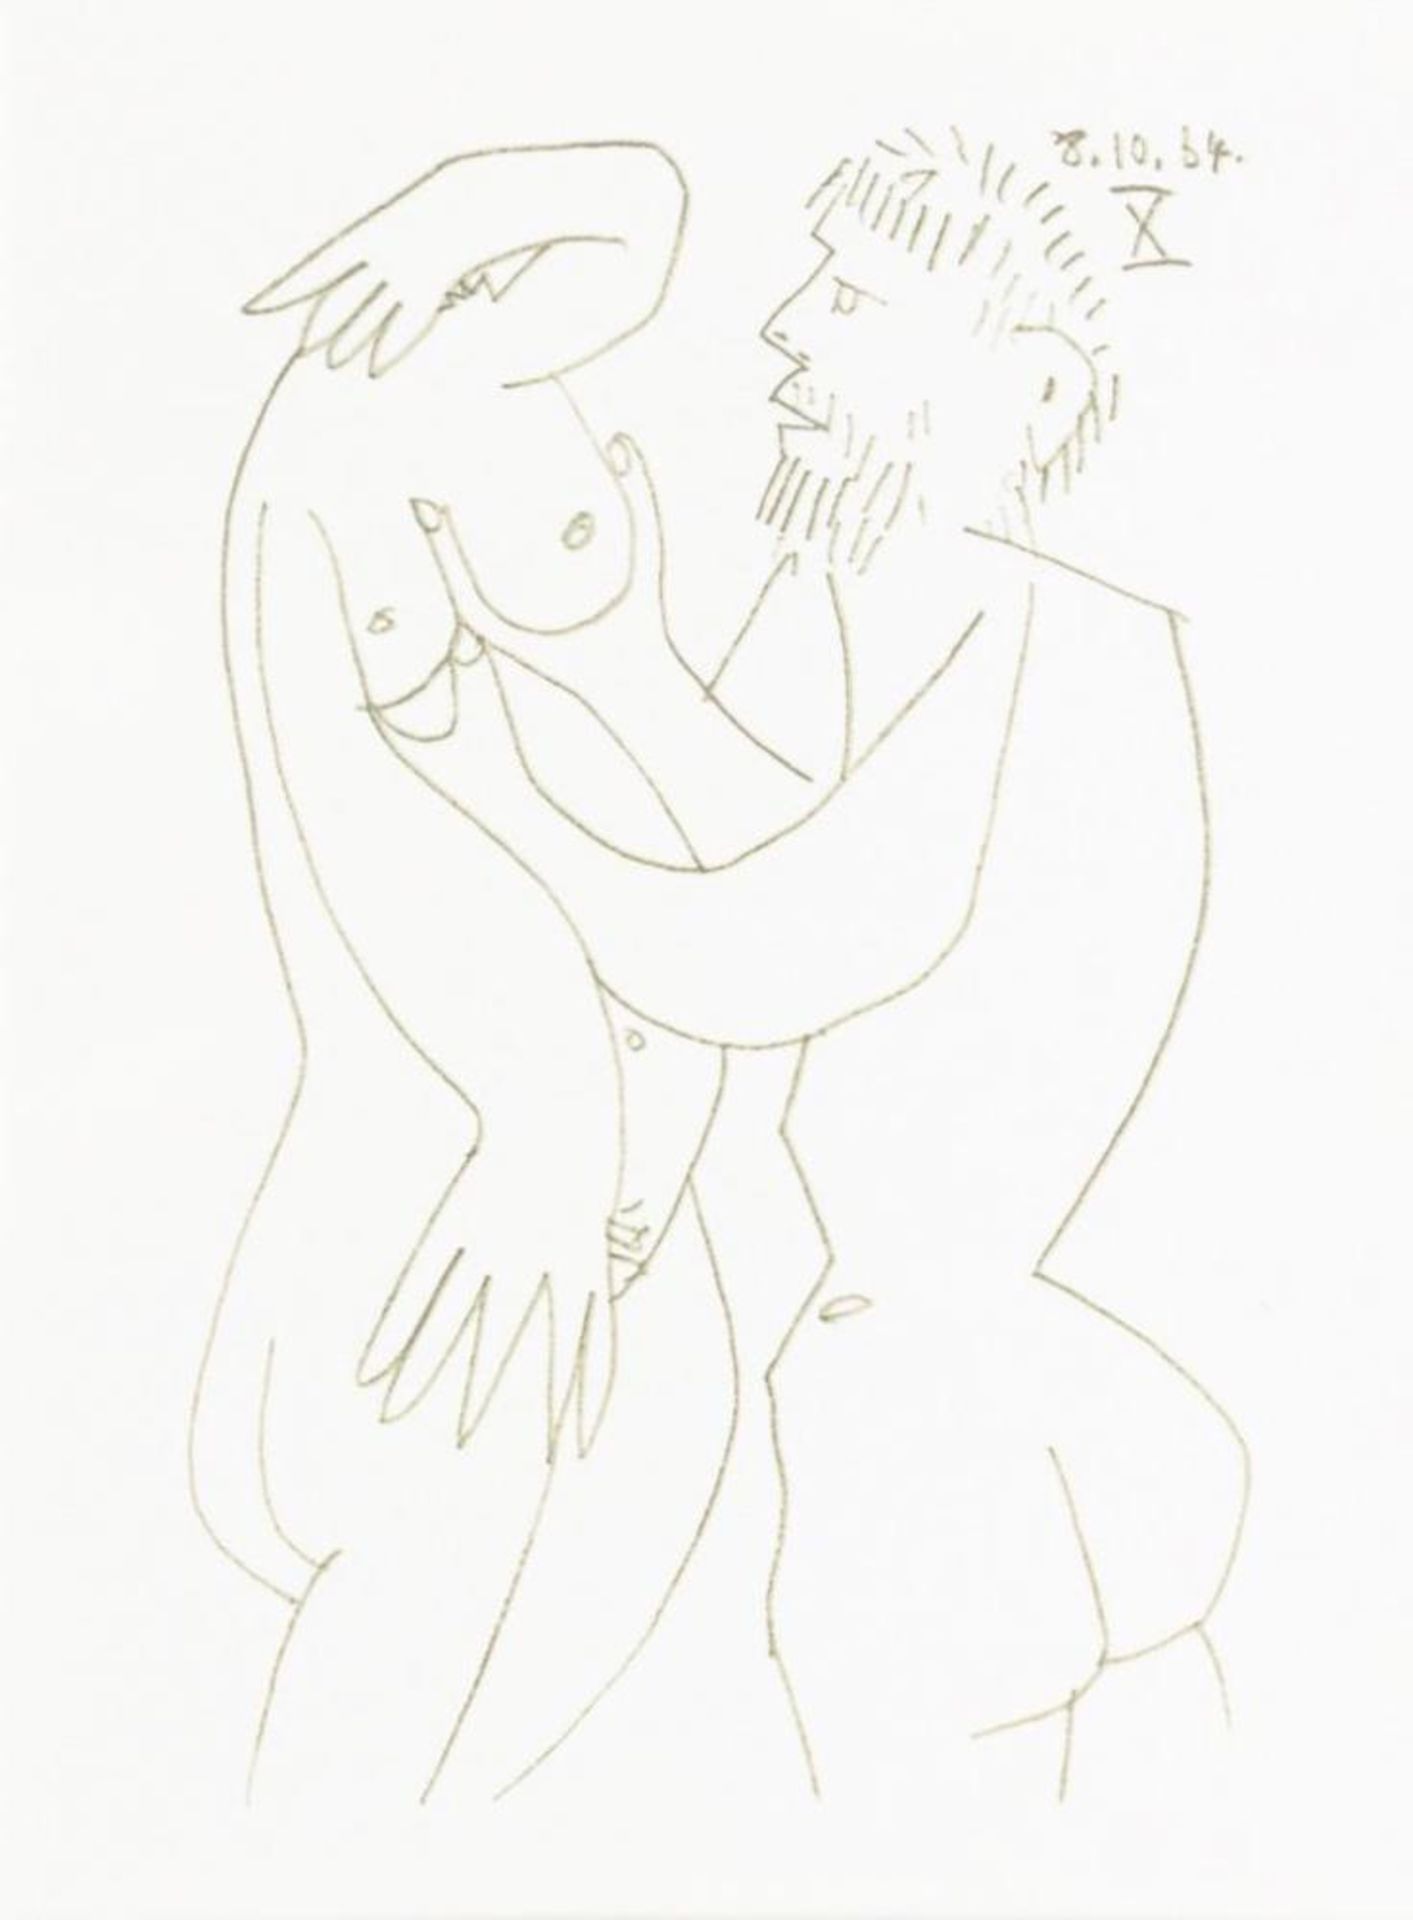 5 erotische Werke: "Skizze anno 1964" - Image 2 of 6